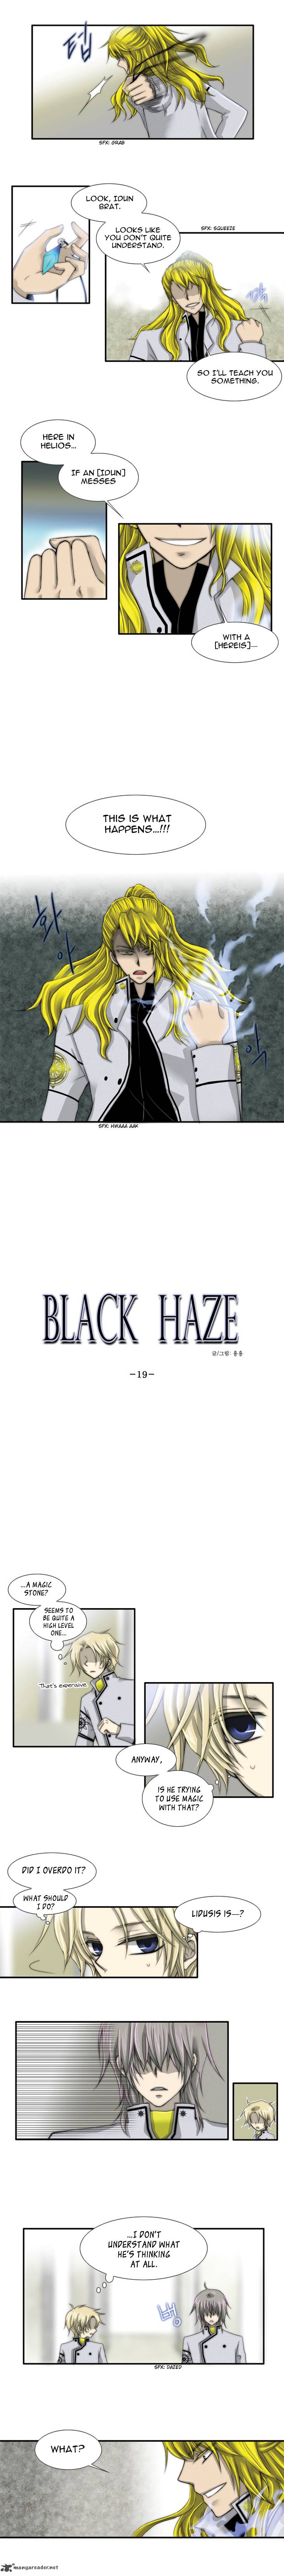 Black Haze 19 2